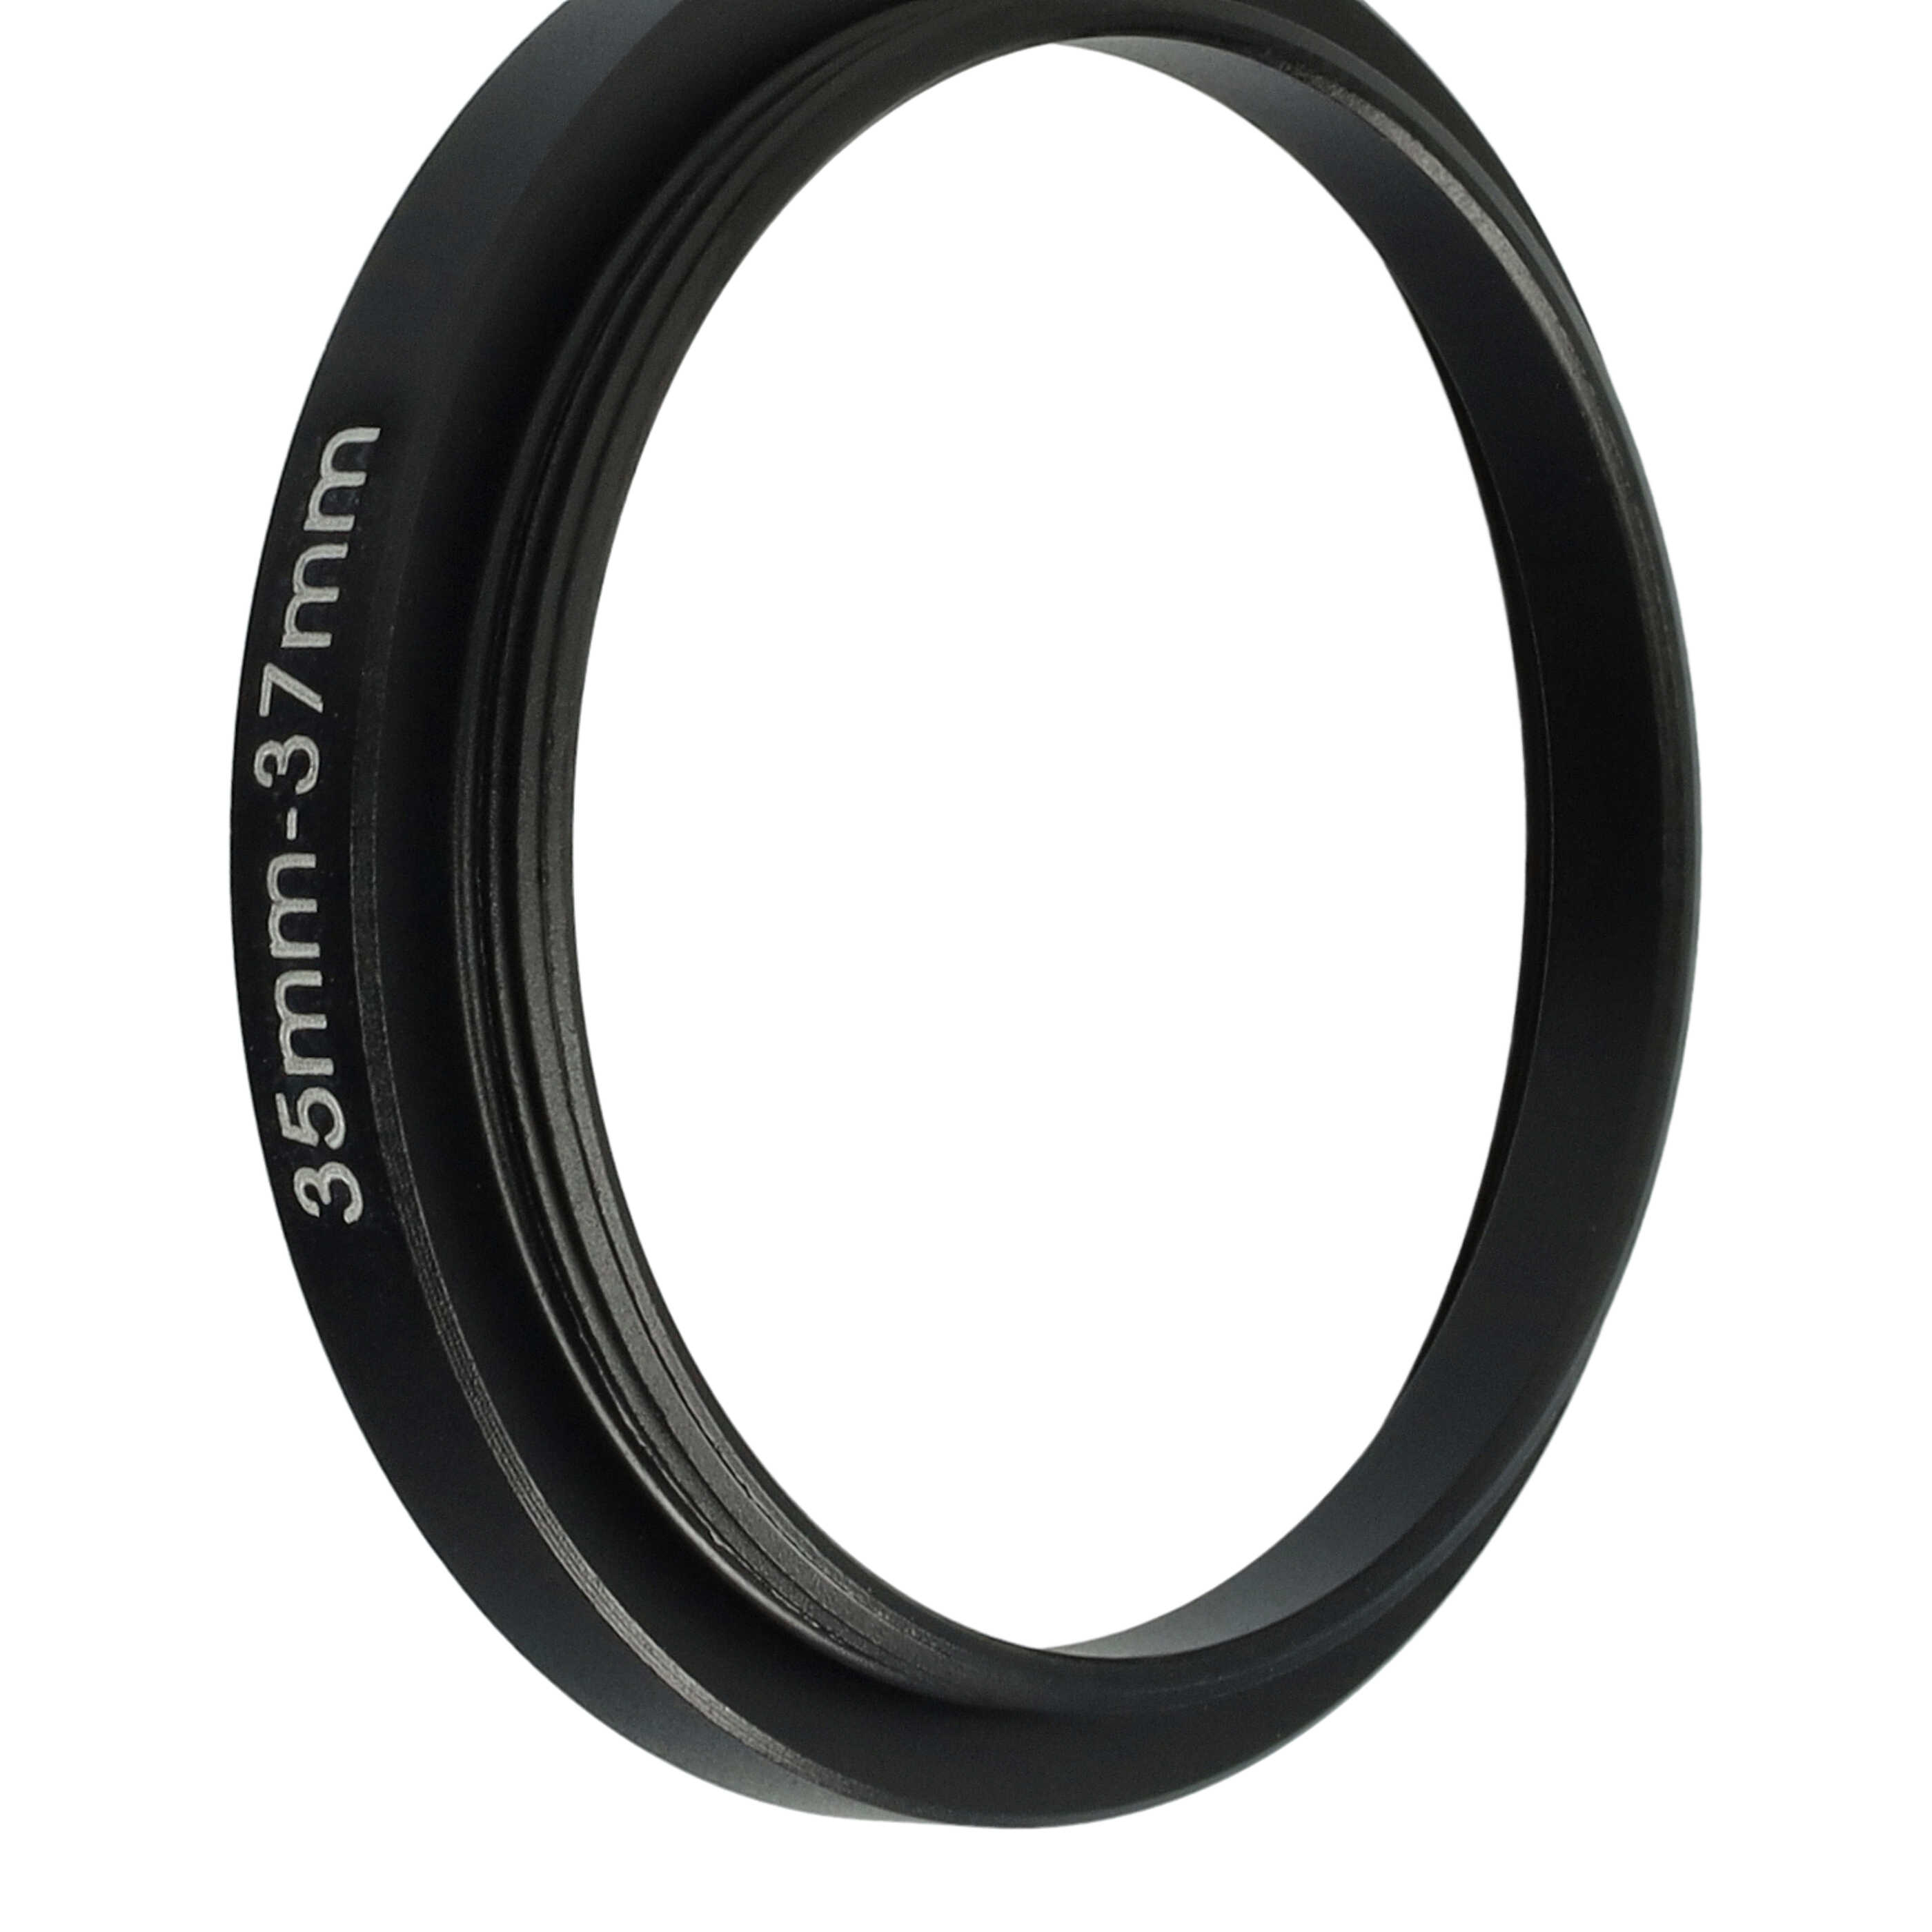 Step-Up-Ring Adapter 35 mm auf 37 mm passend für diverse Kamera-Objektive - Filteradapter